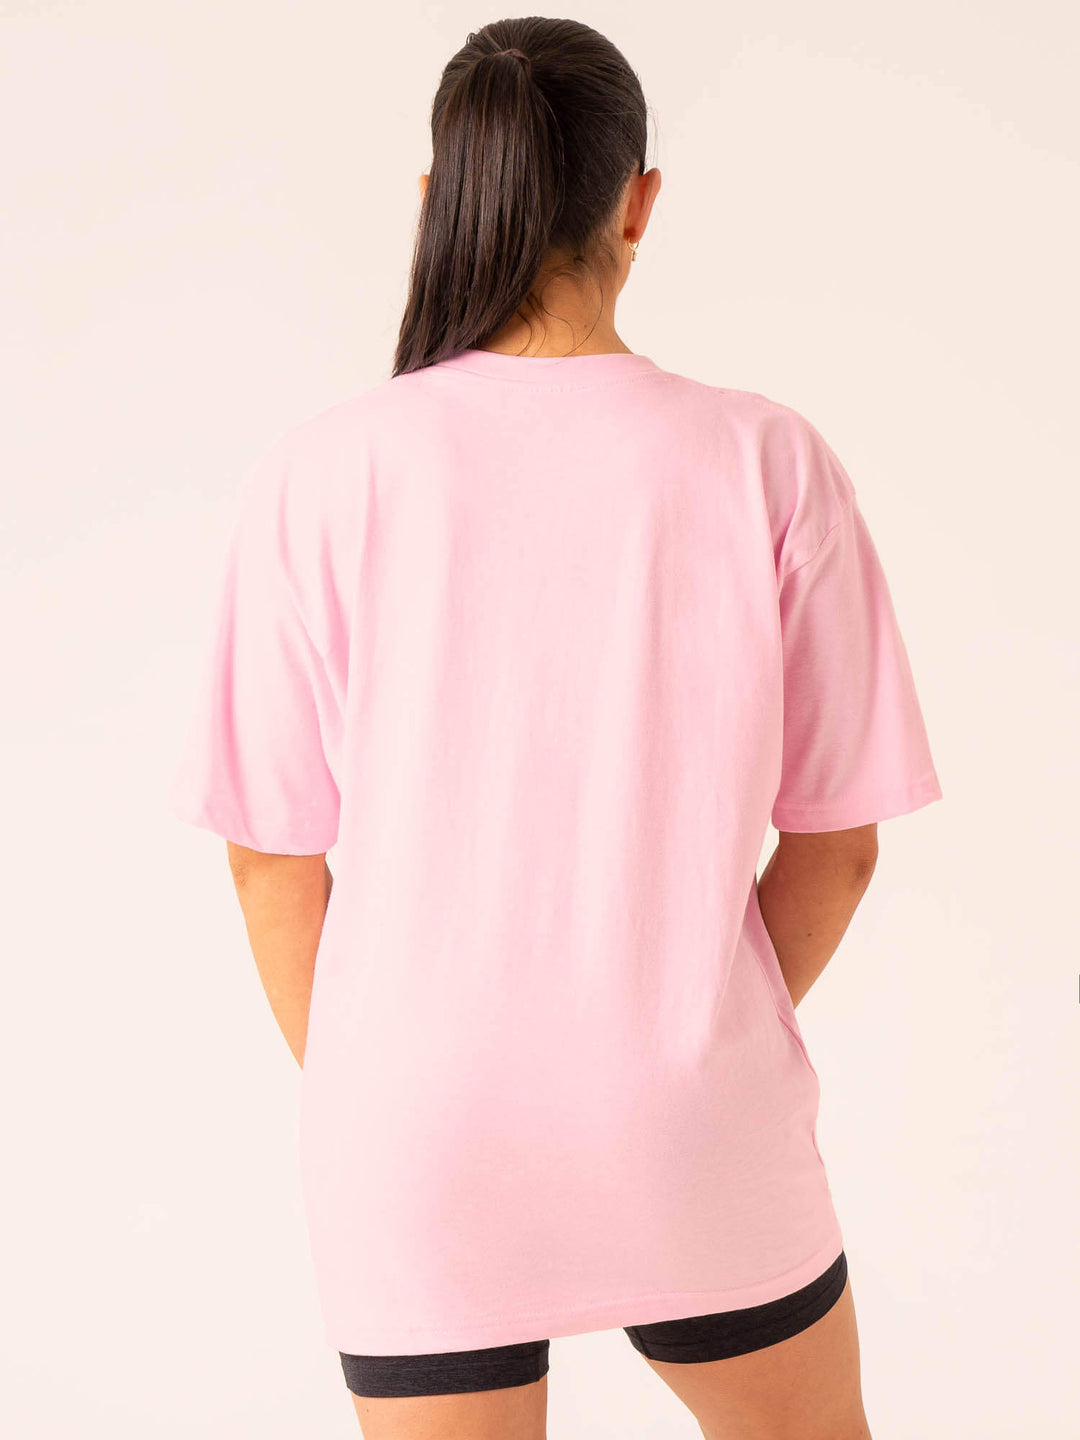 Lifting Club T-Shirt - Pink Clothing Ryderwear 